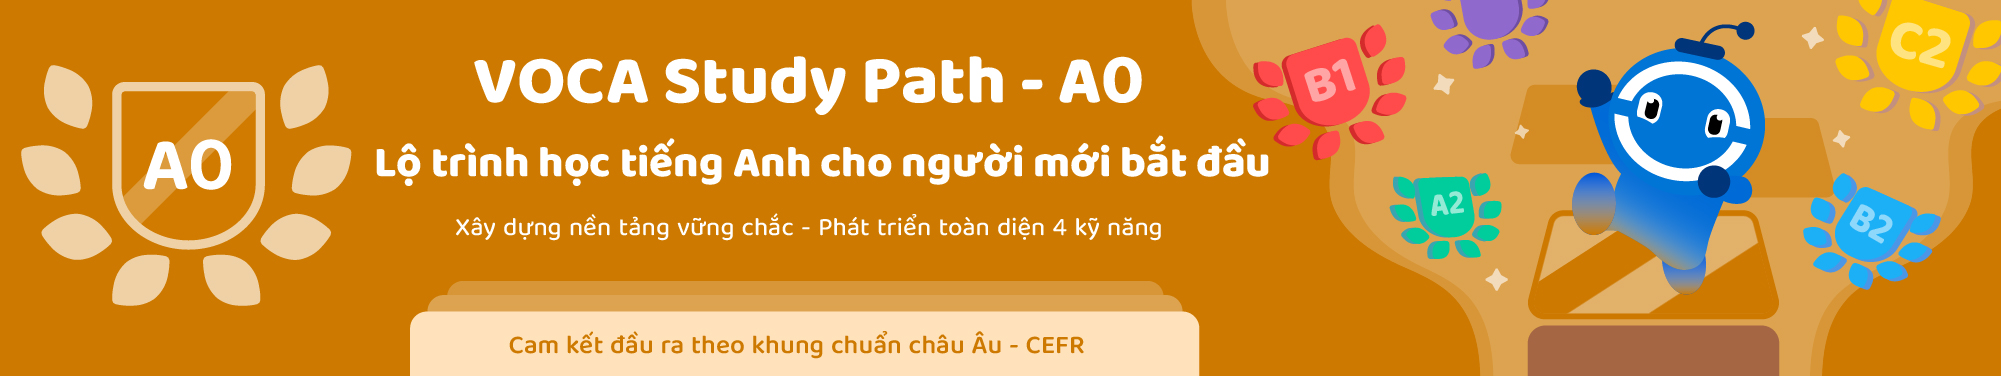 VOCA Study Path (CEFR) - Level A0 banner